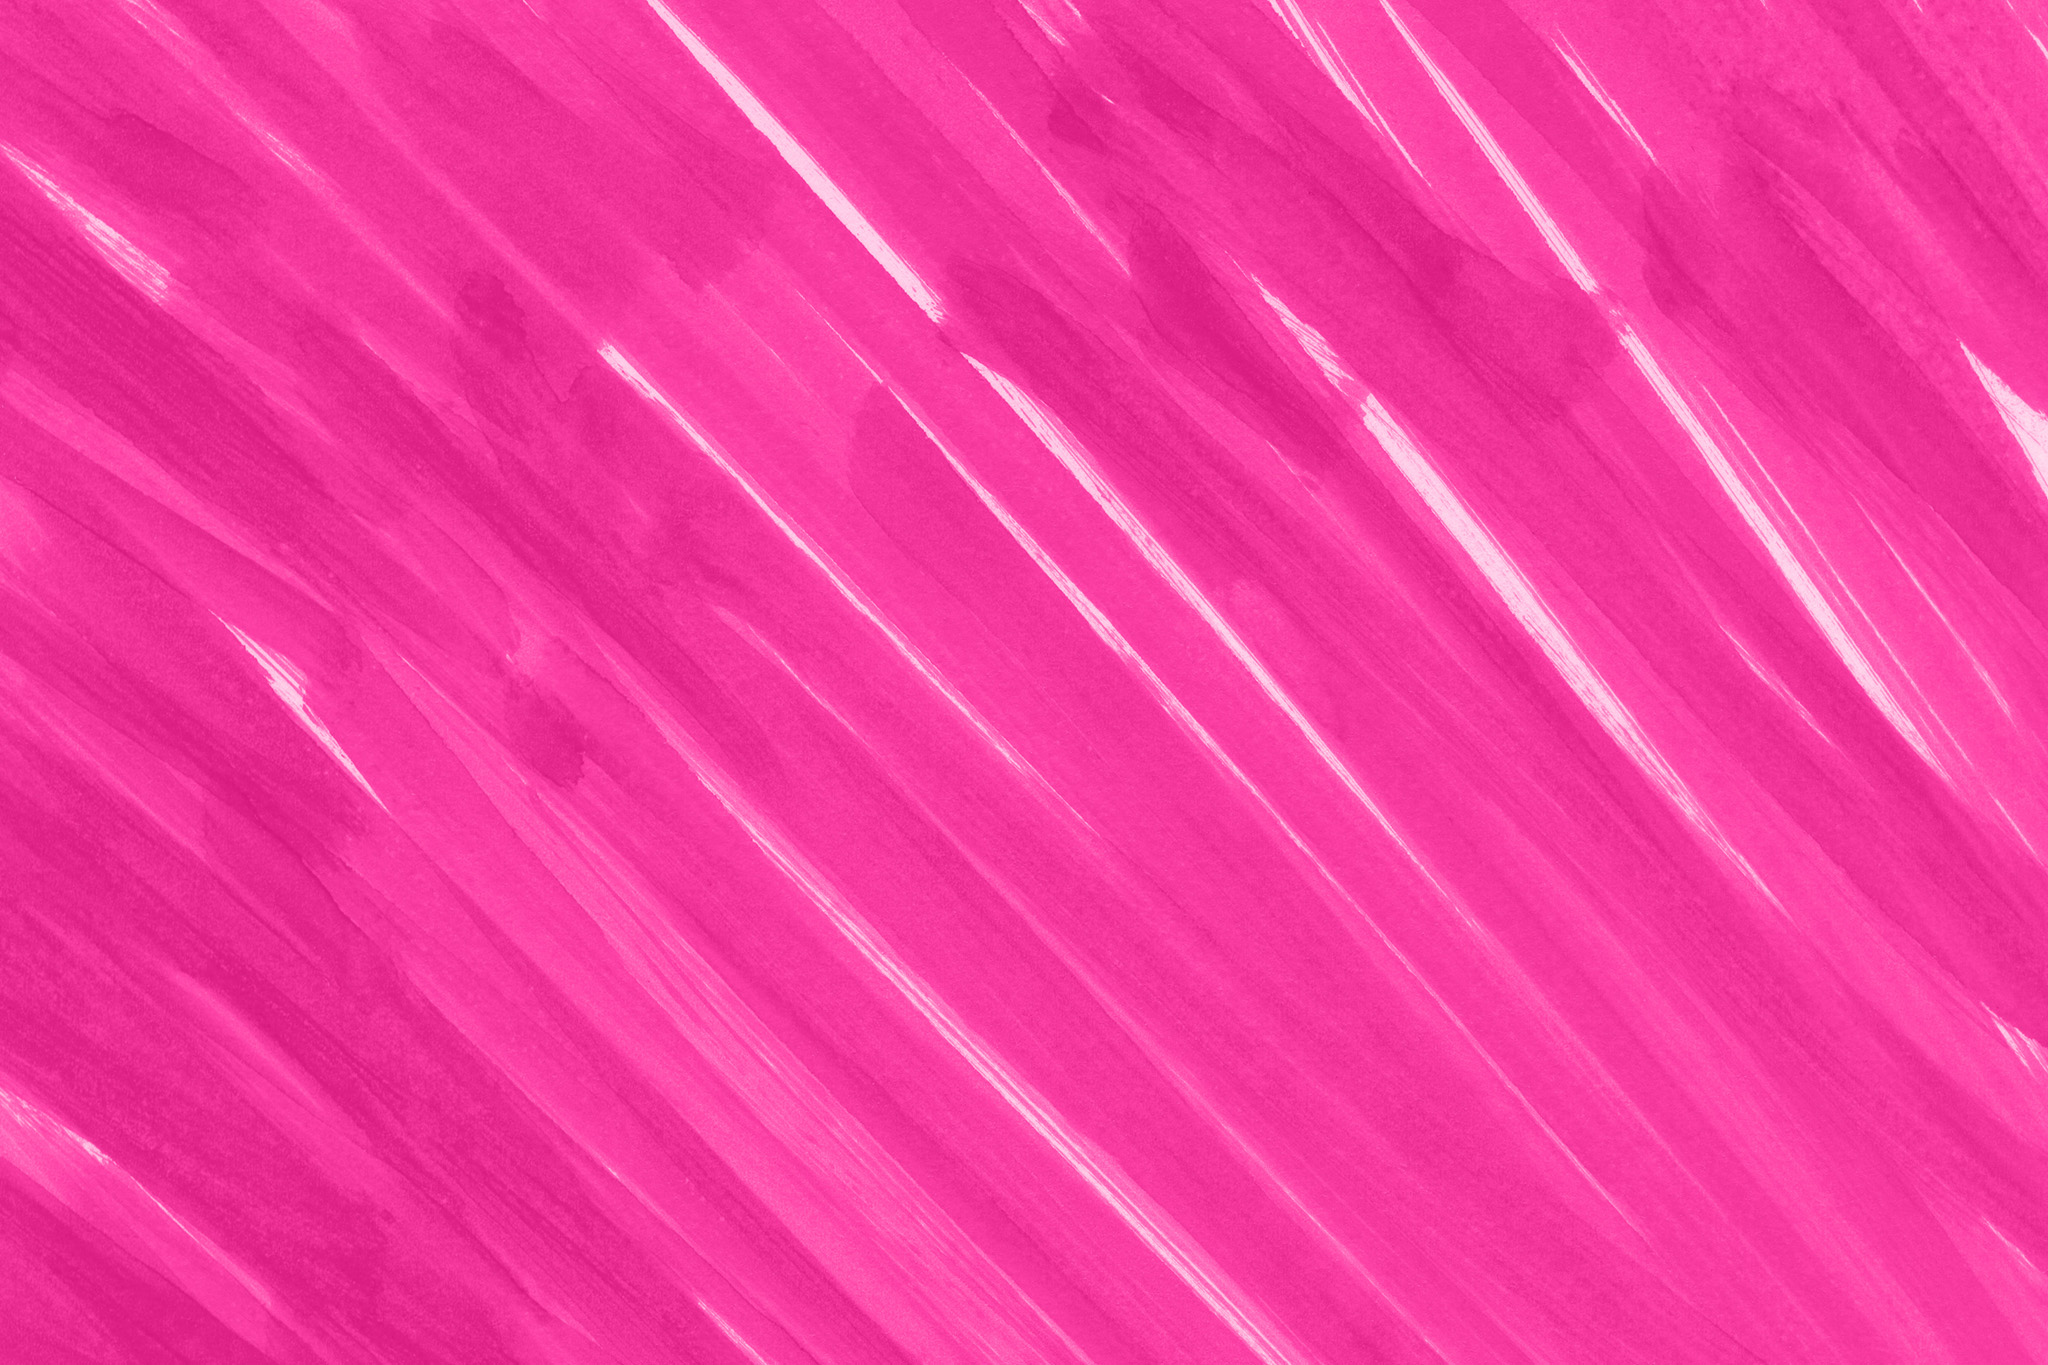 ピンクの背景のテクスチャ壁紙 の画像素材を無料ダウンロード 1 フリー素材 Beiz Images